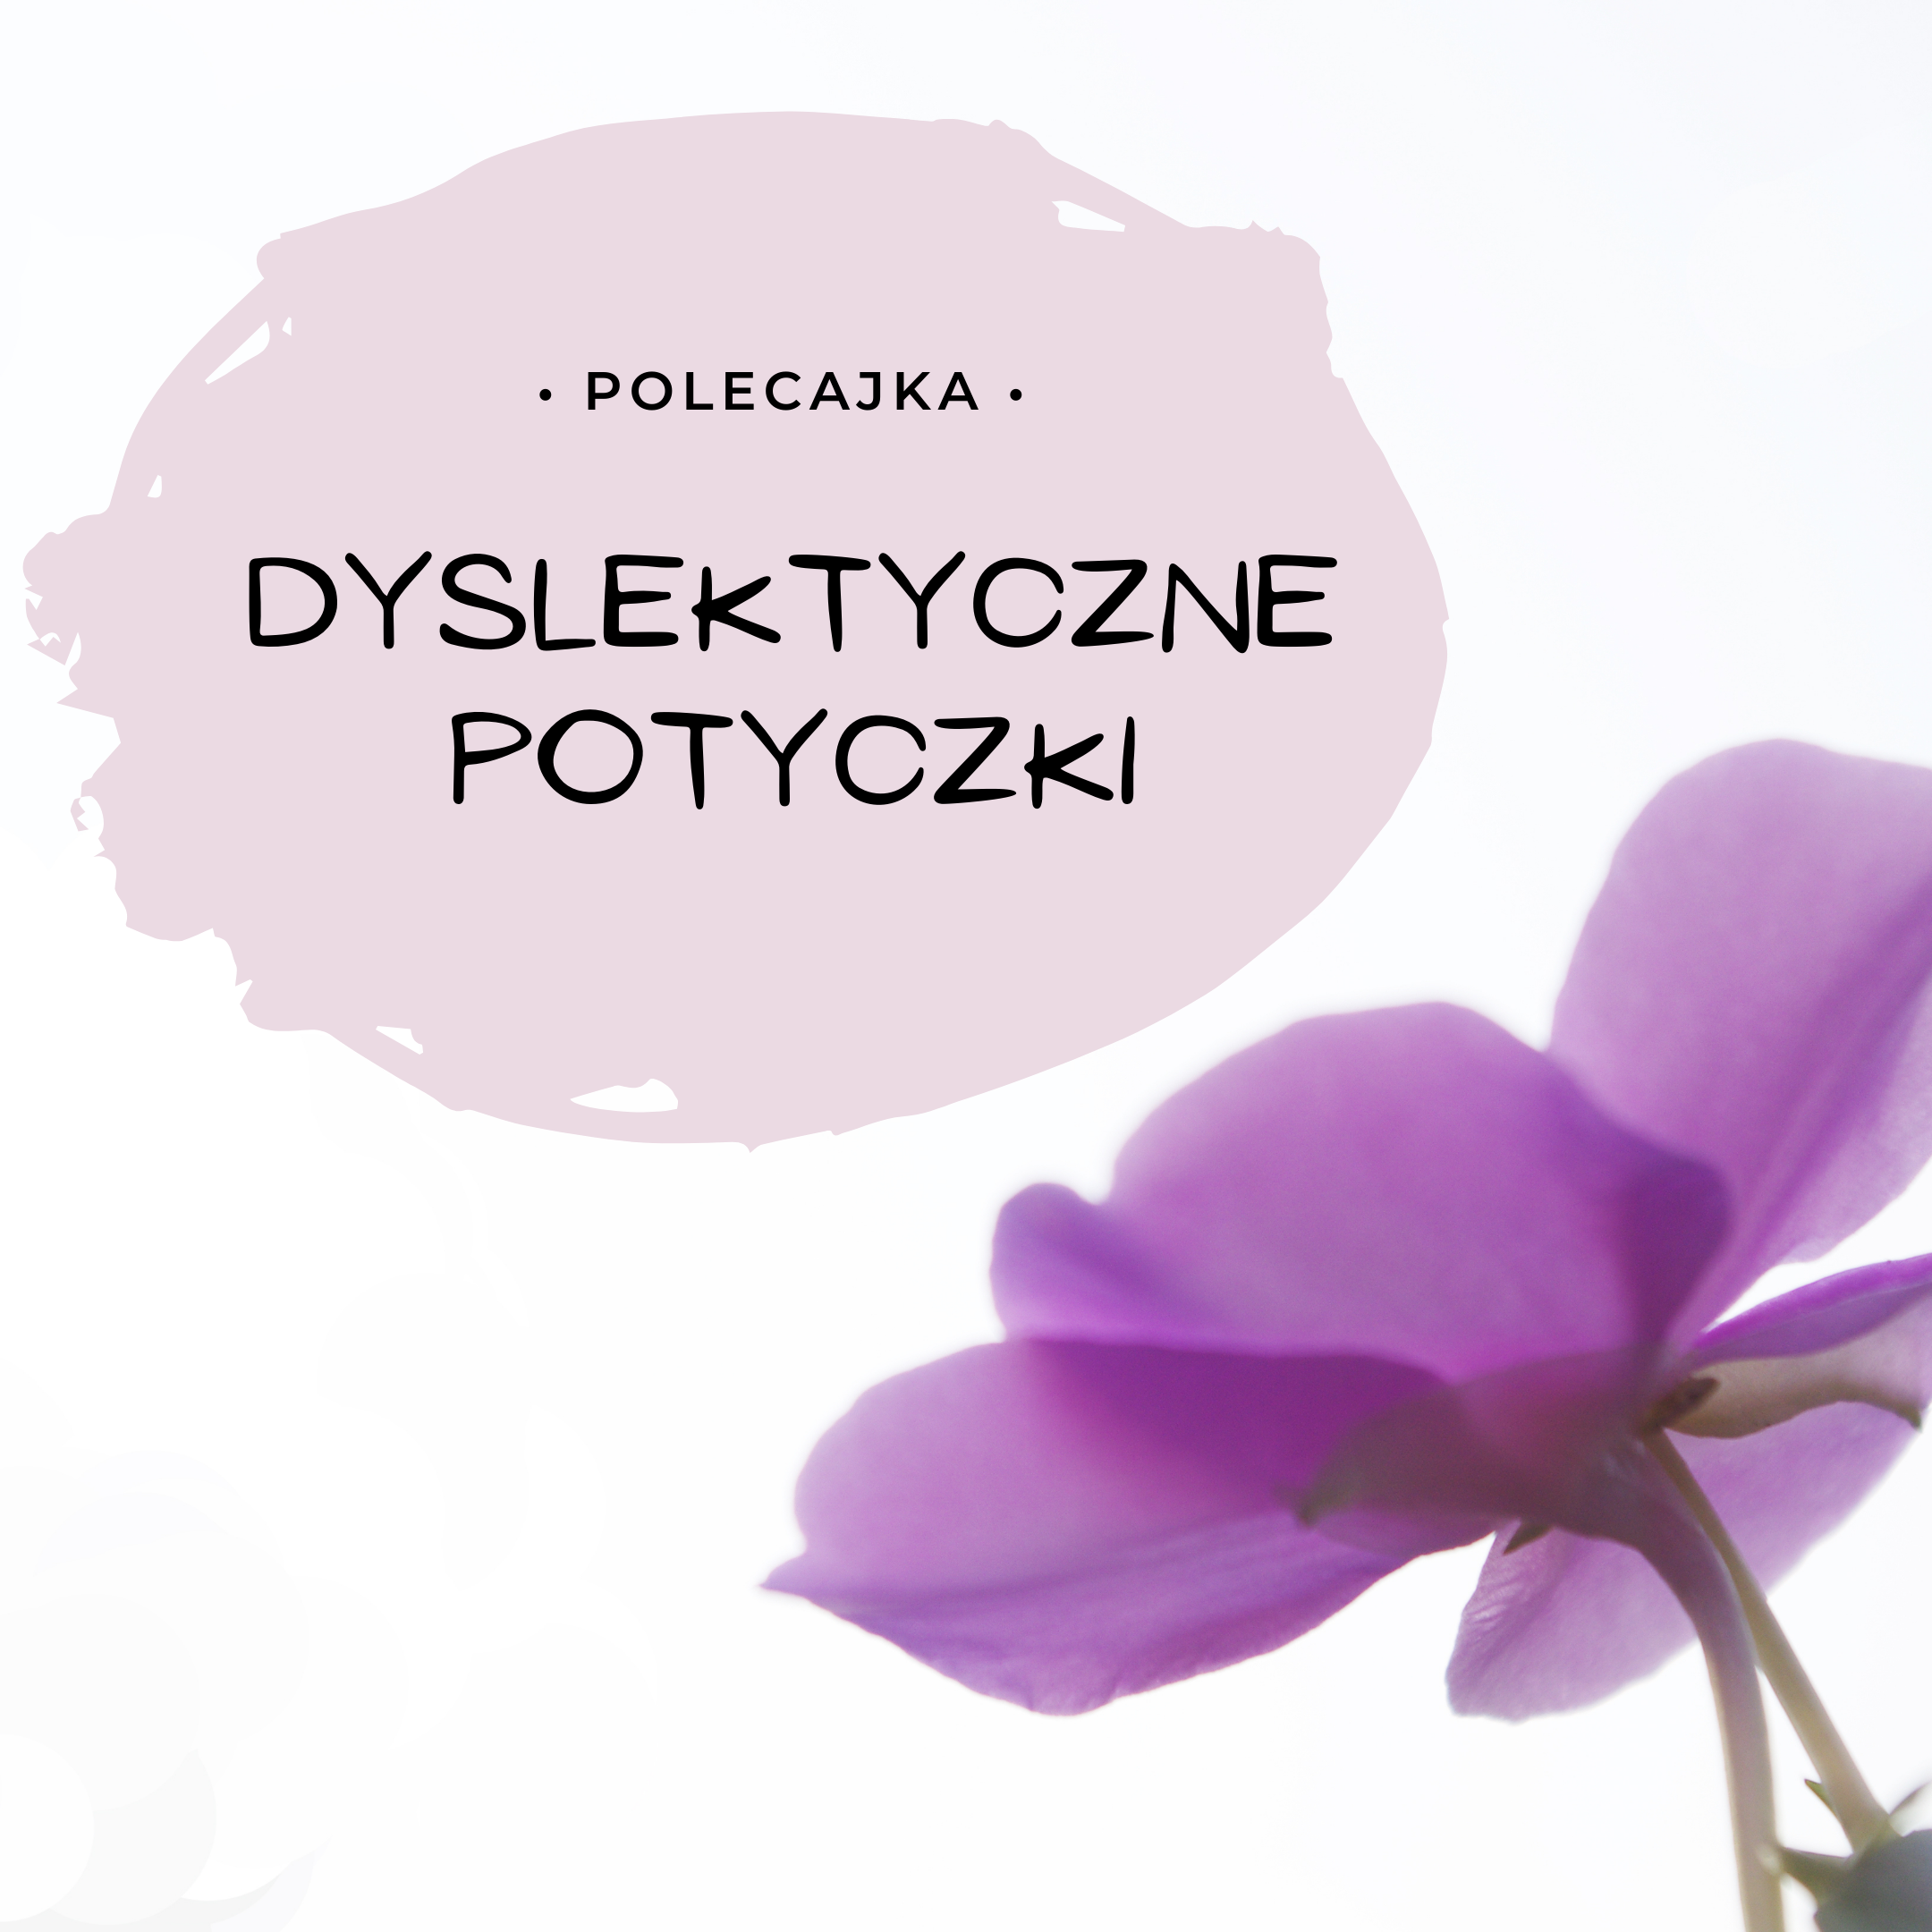 Dyslektyczne potyczki – moja duma od PUS.pl